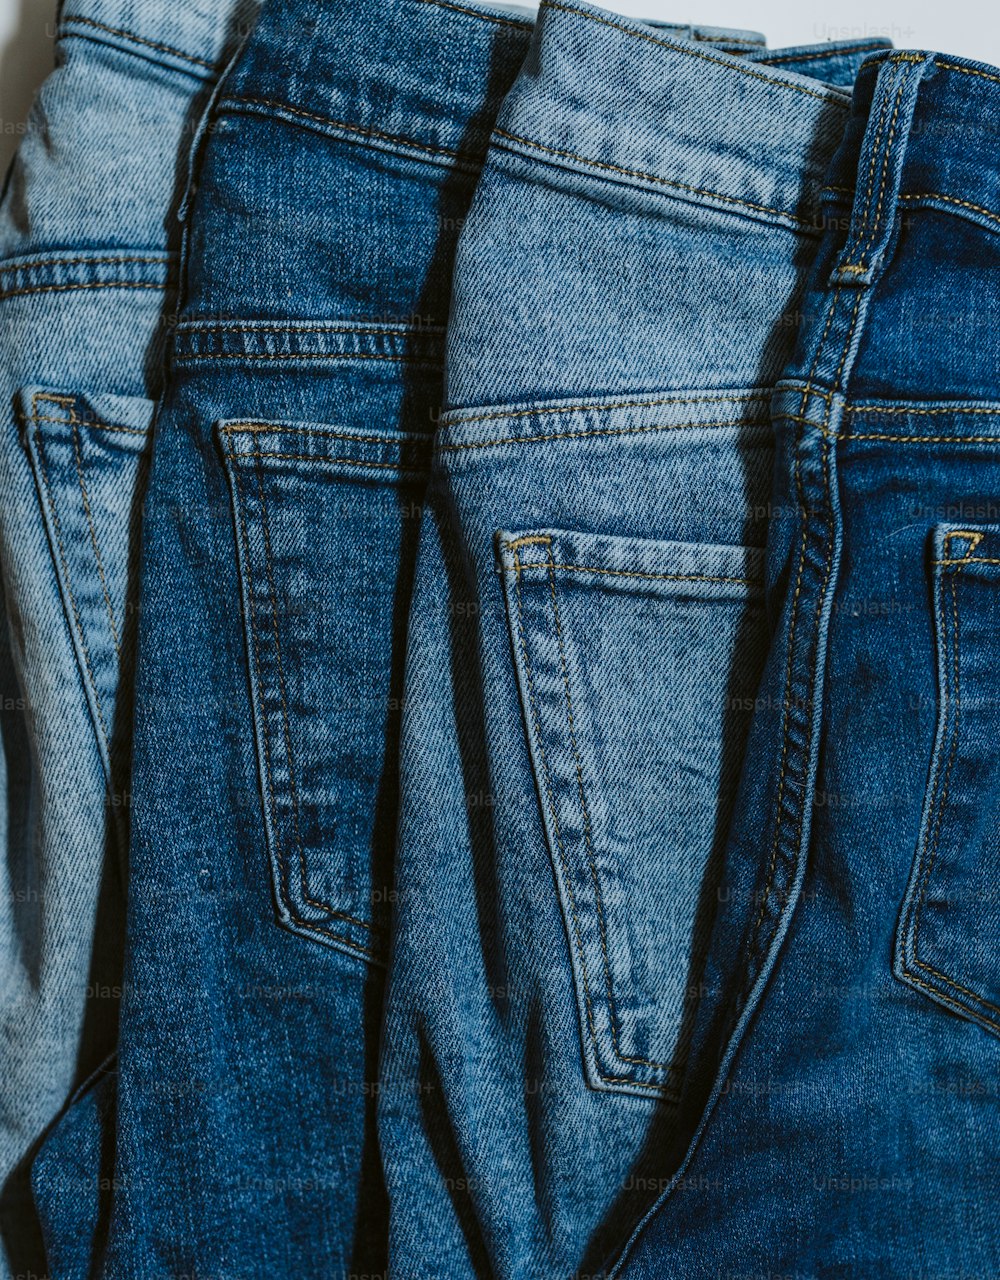 Tres pares de jeans están alineados sobre una superficie blanca